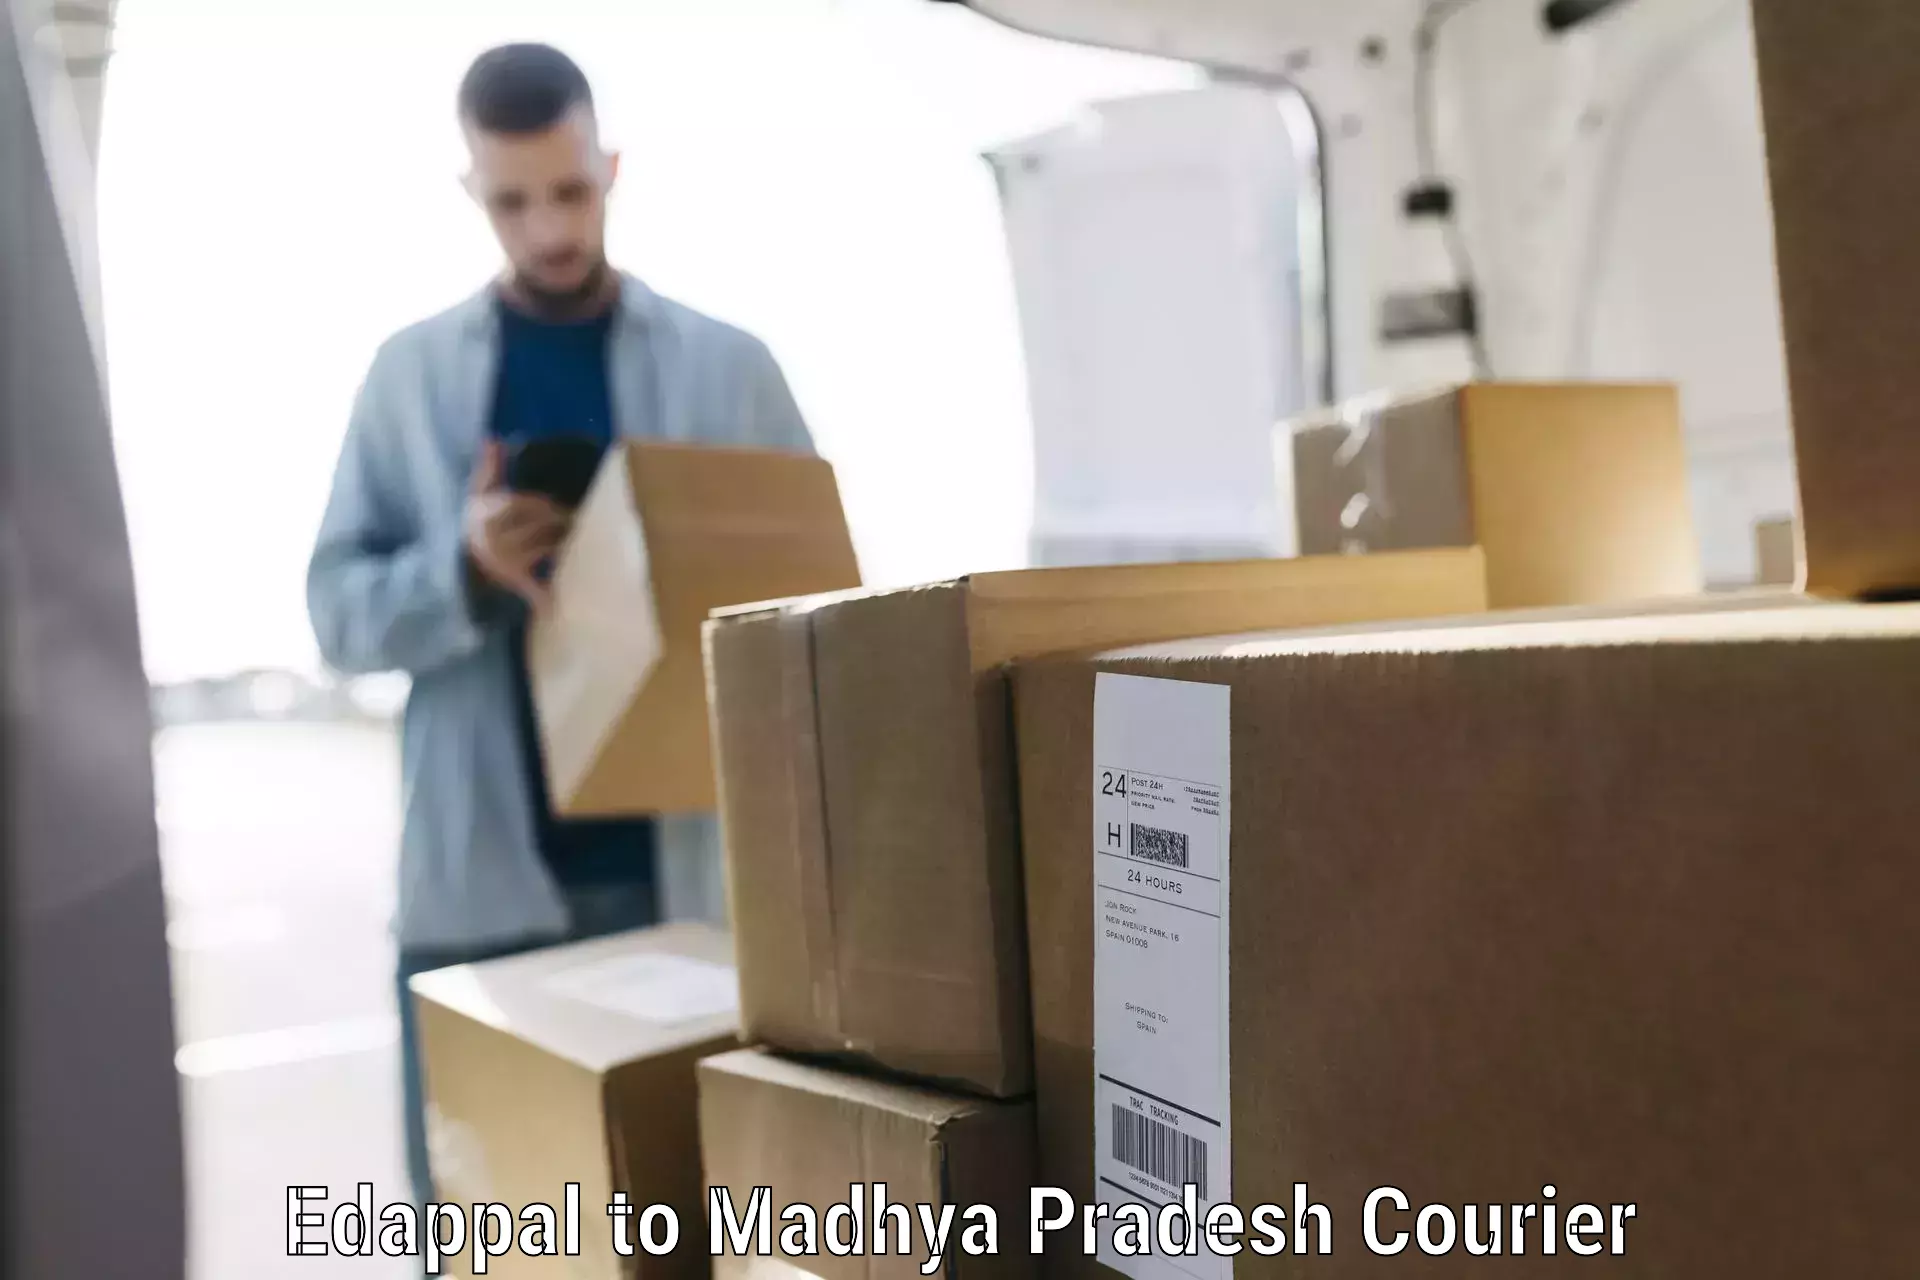 Baggage transport scheduler Edappal to Madhya Pradesh